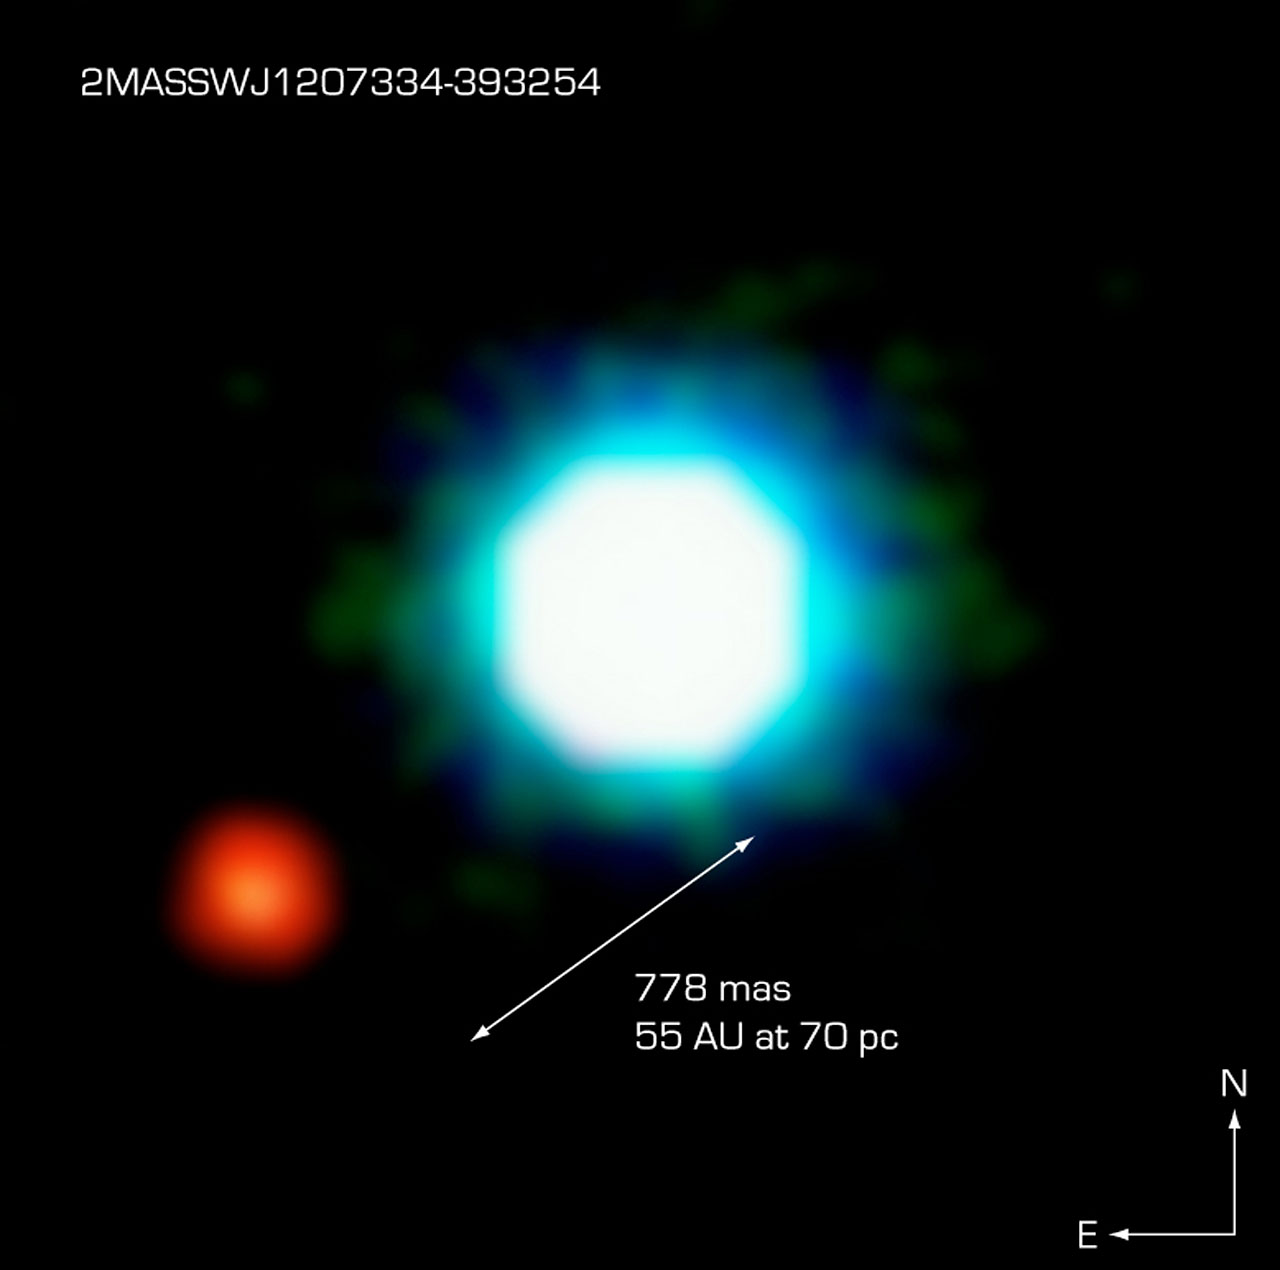 фотография экзопланеты, inauka.ucoz.ru, спросите науку